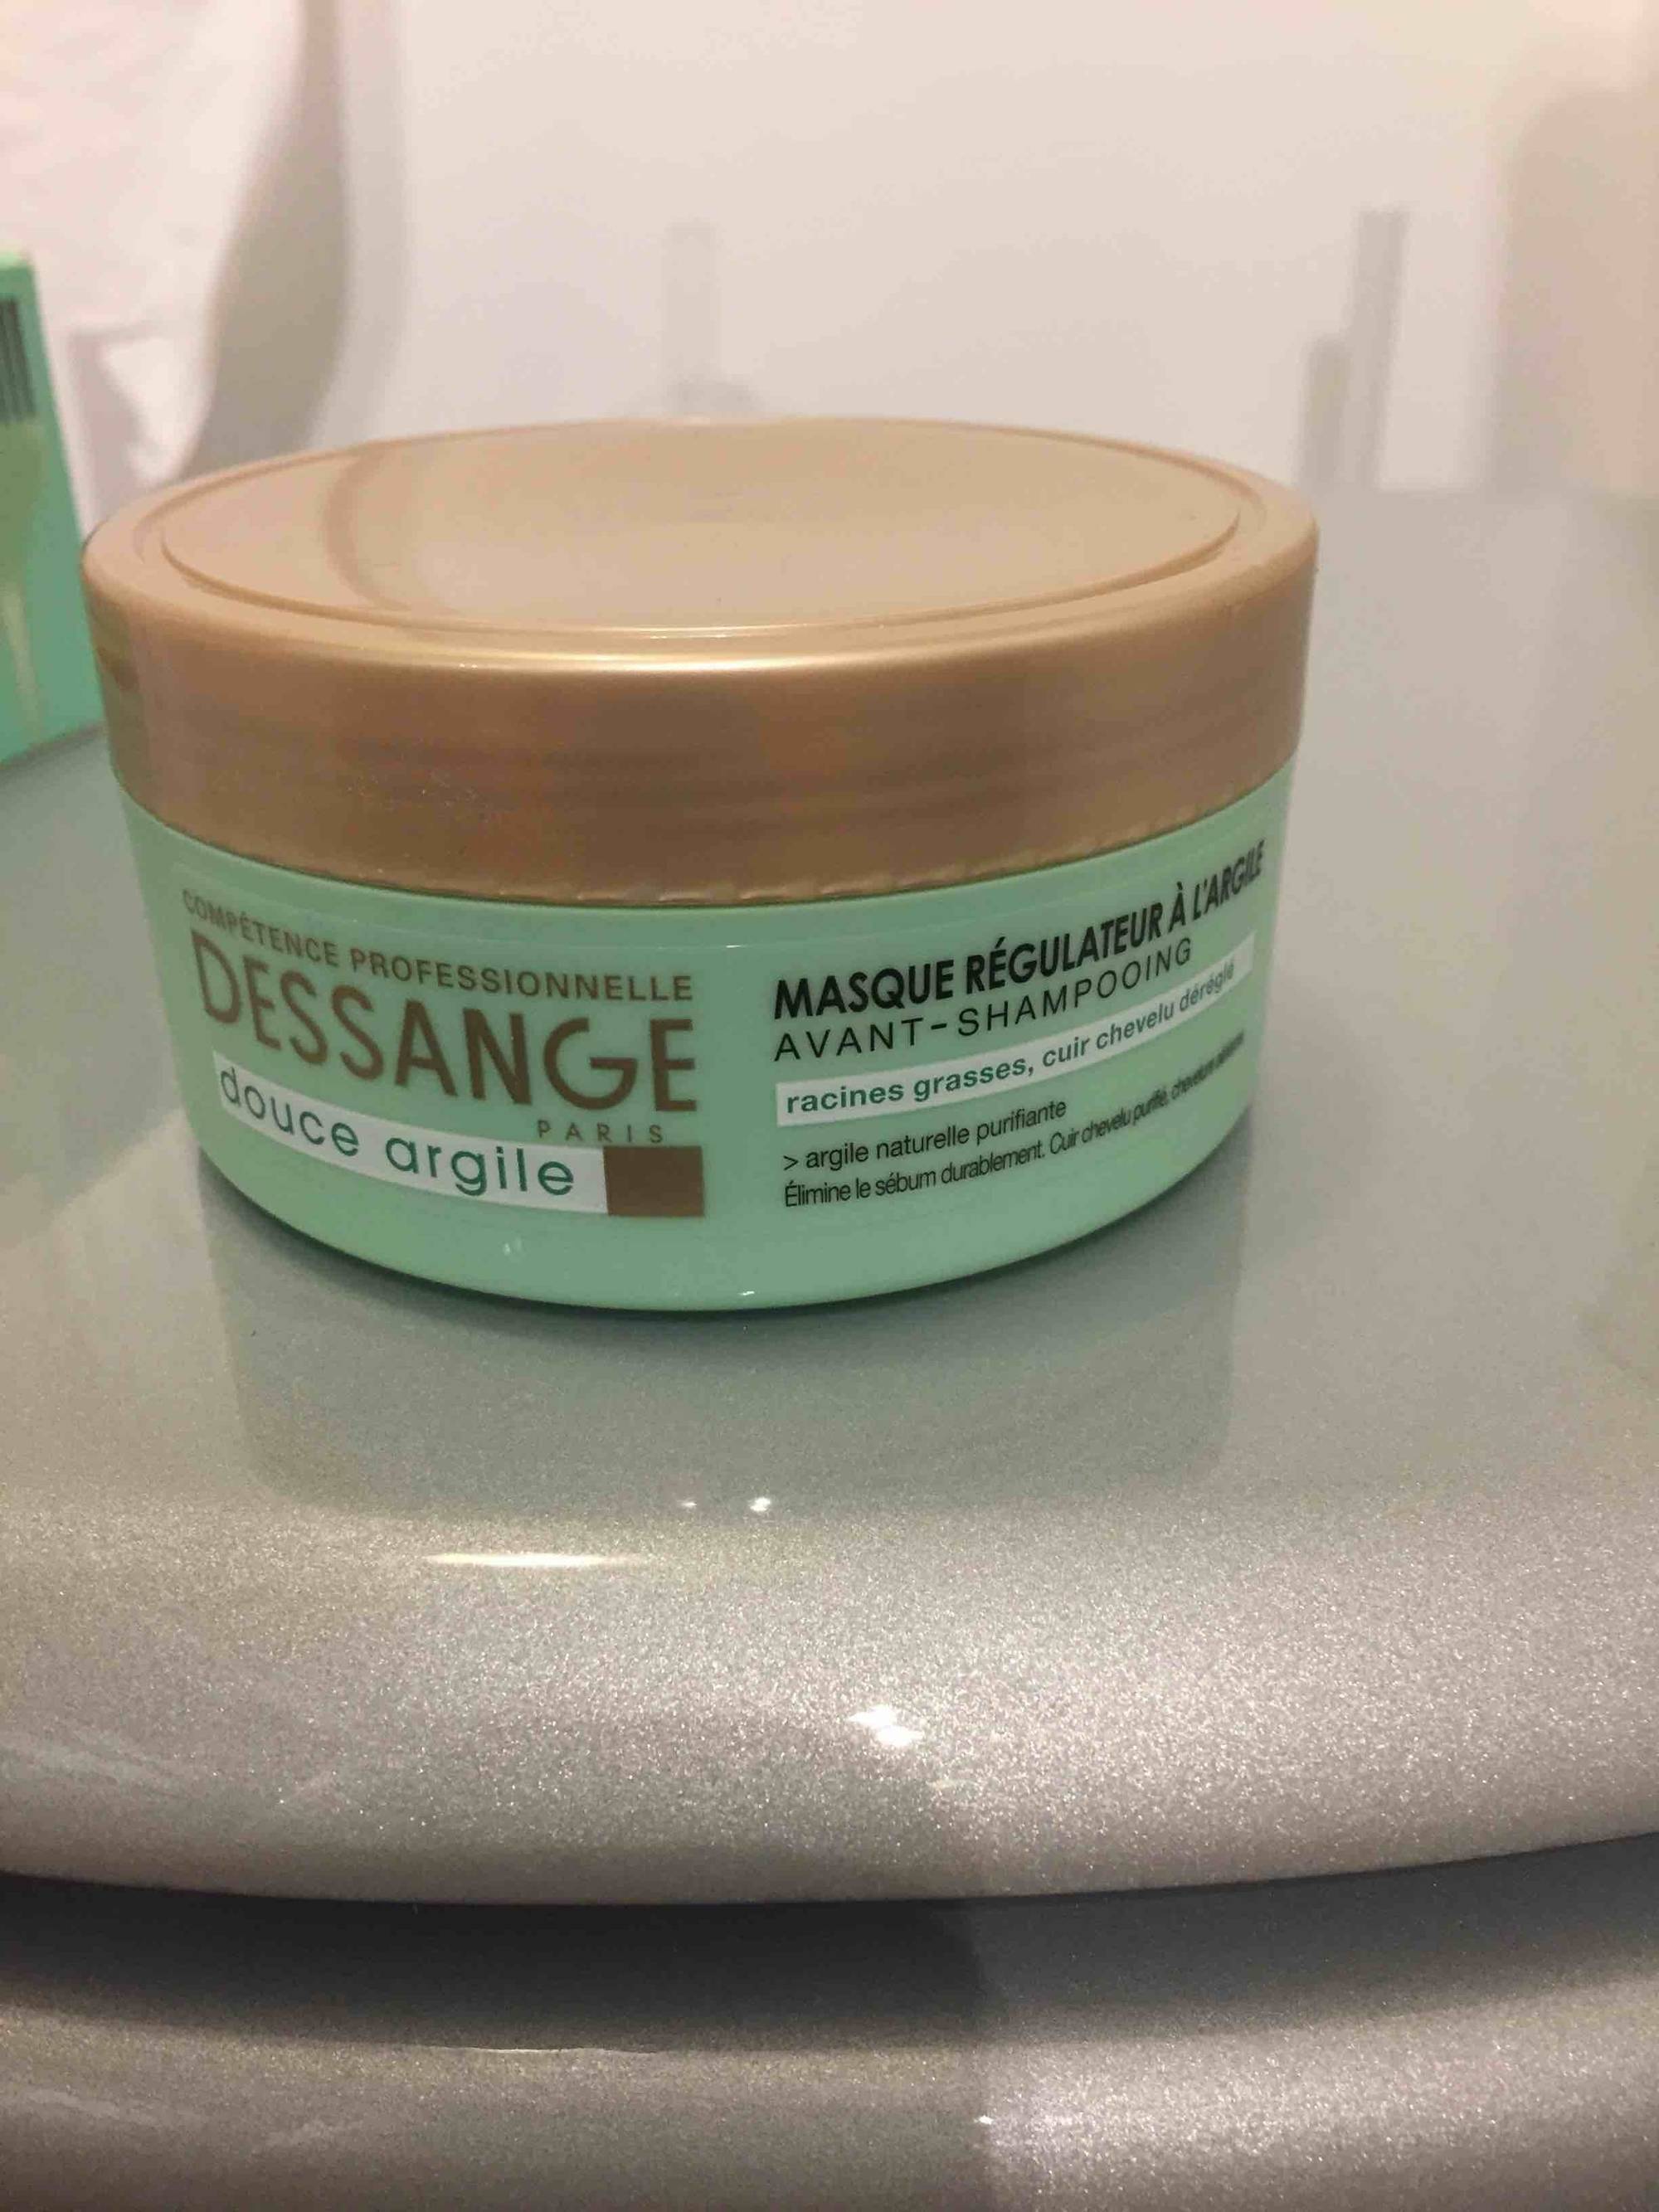 DESSANGE - Douce argile - Masque régulateur avant-shampooing